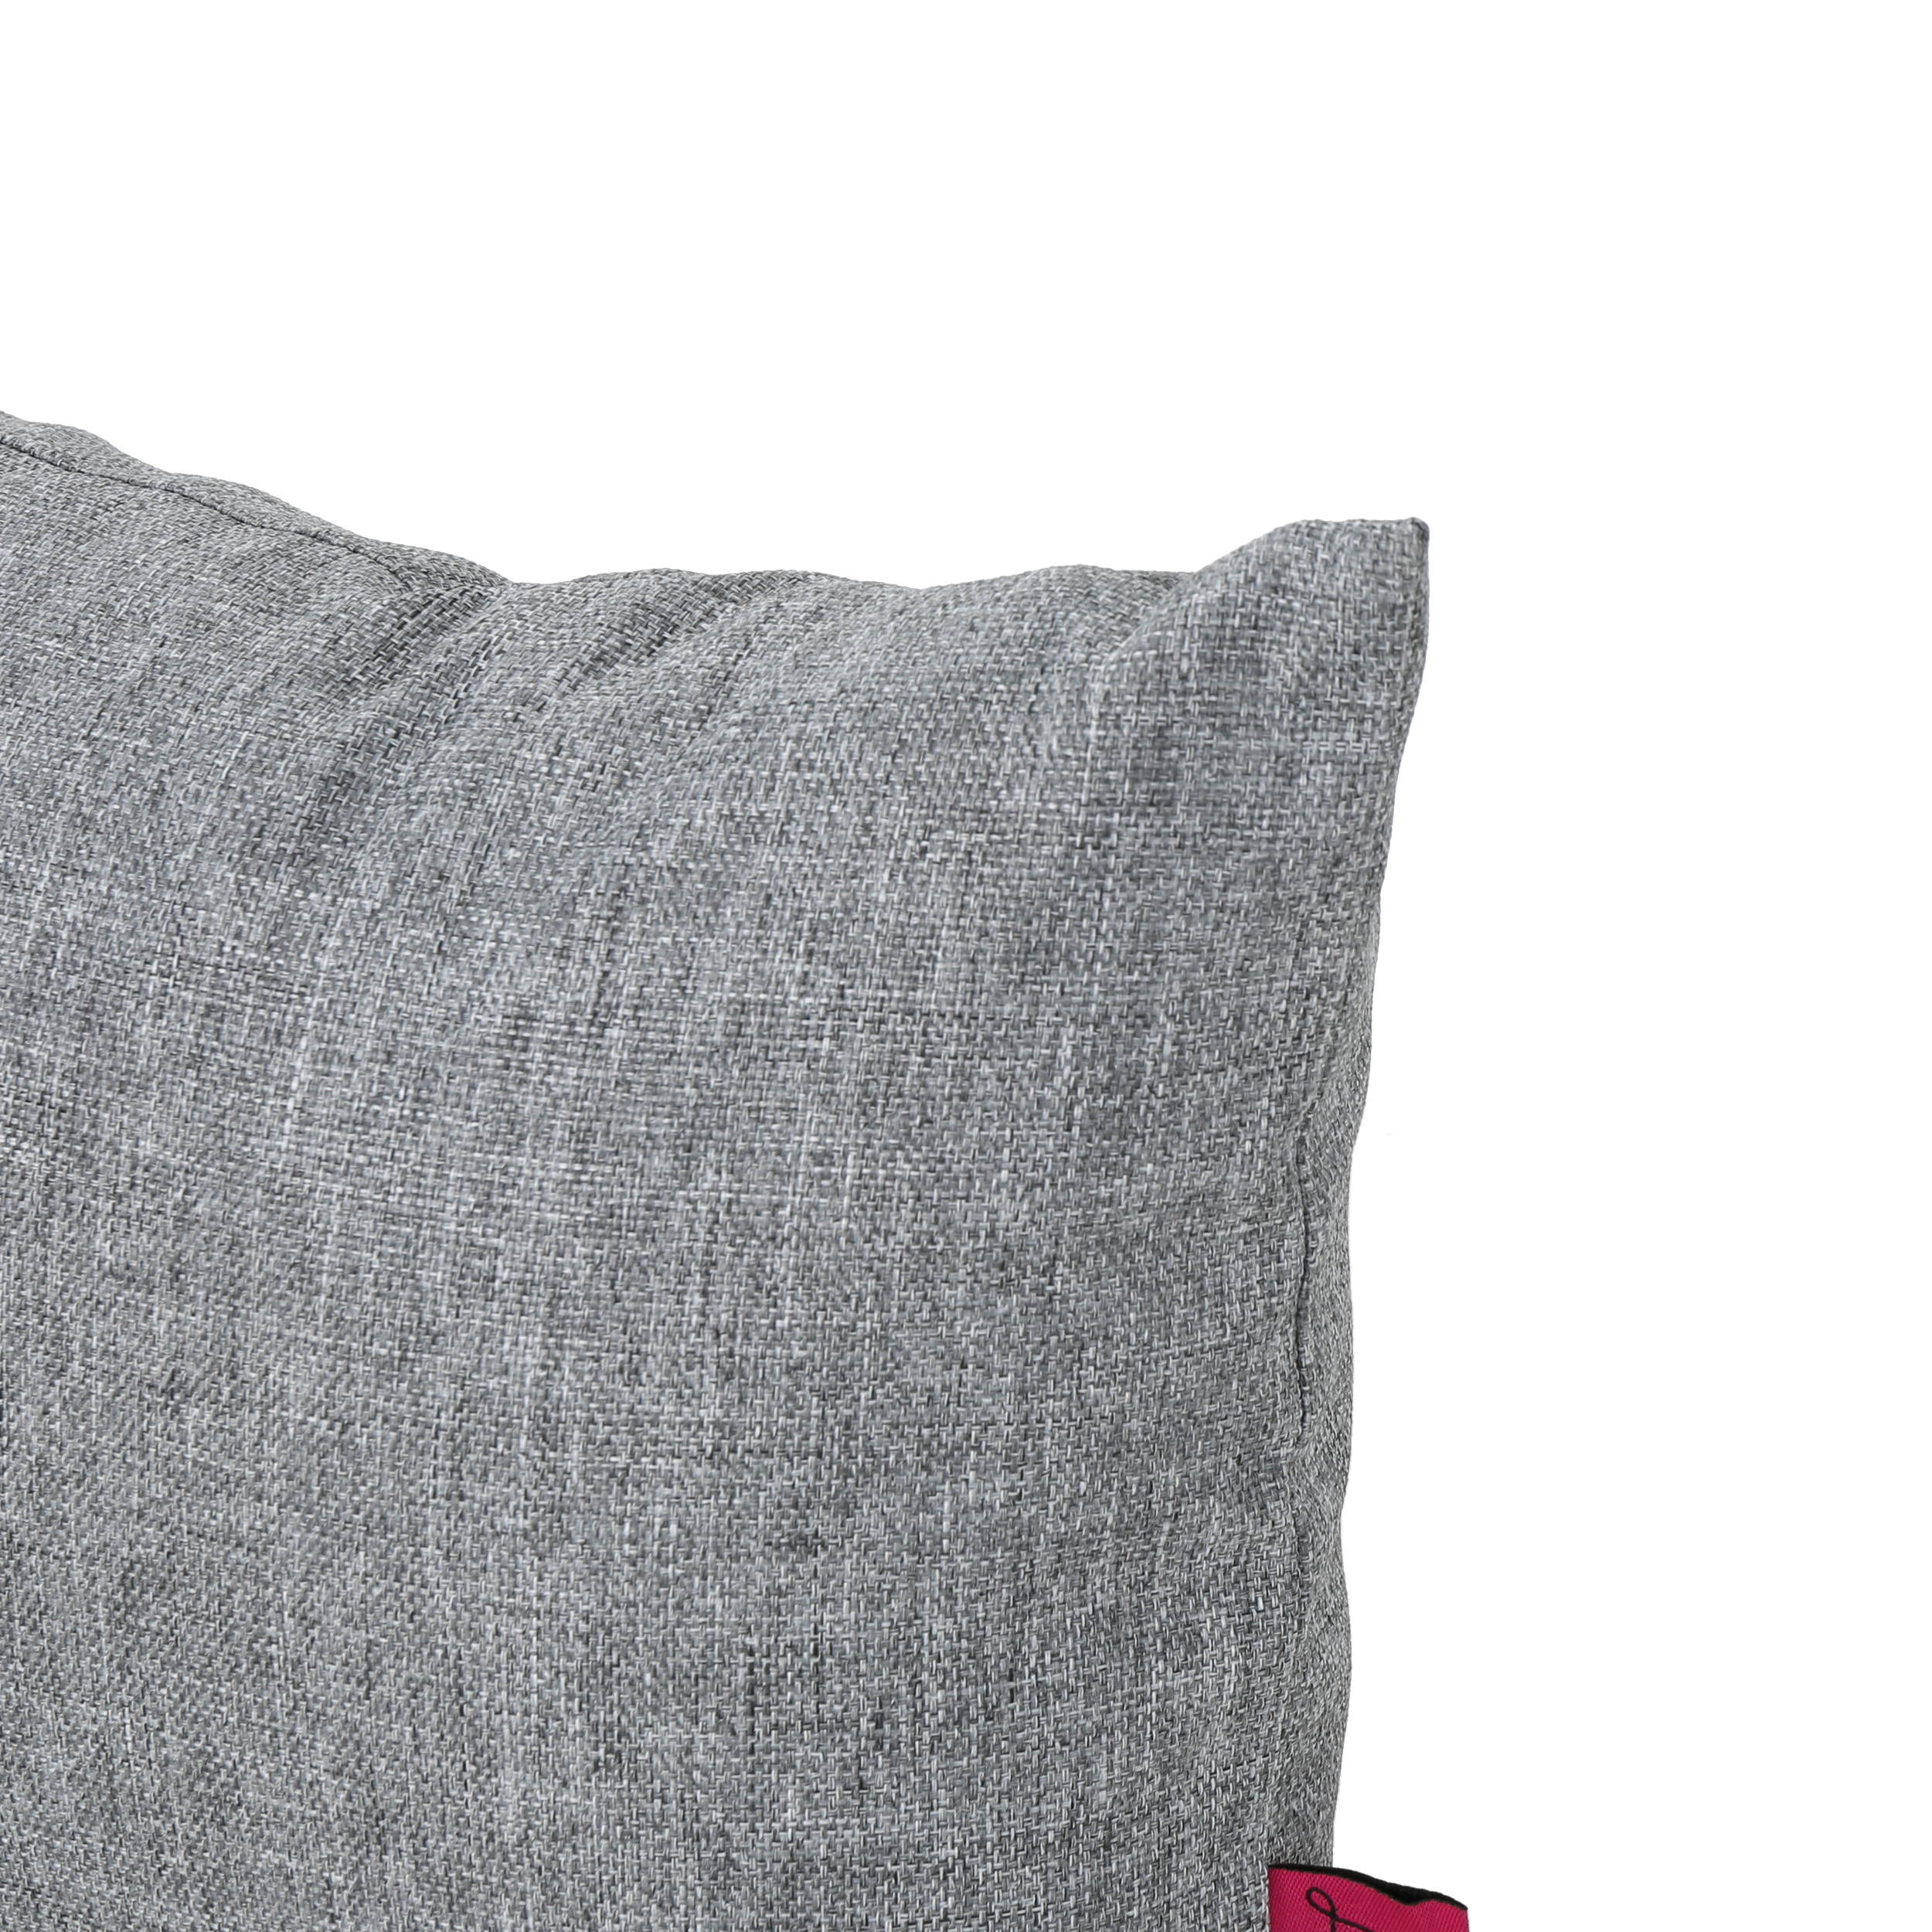 Noble House Coronado 18.5x11.5" Outdoor Fabric Throw Pillow in Gray - image 4 of 11